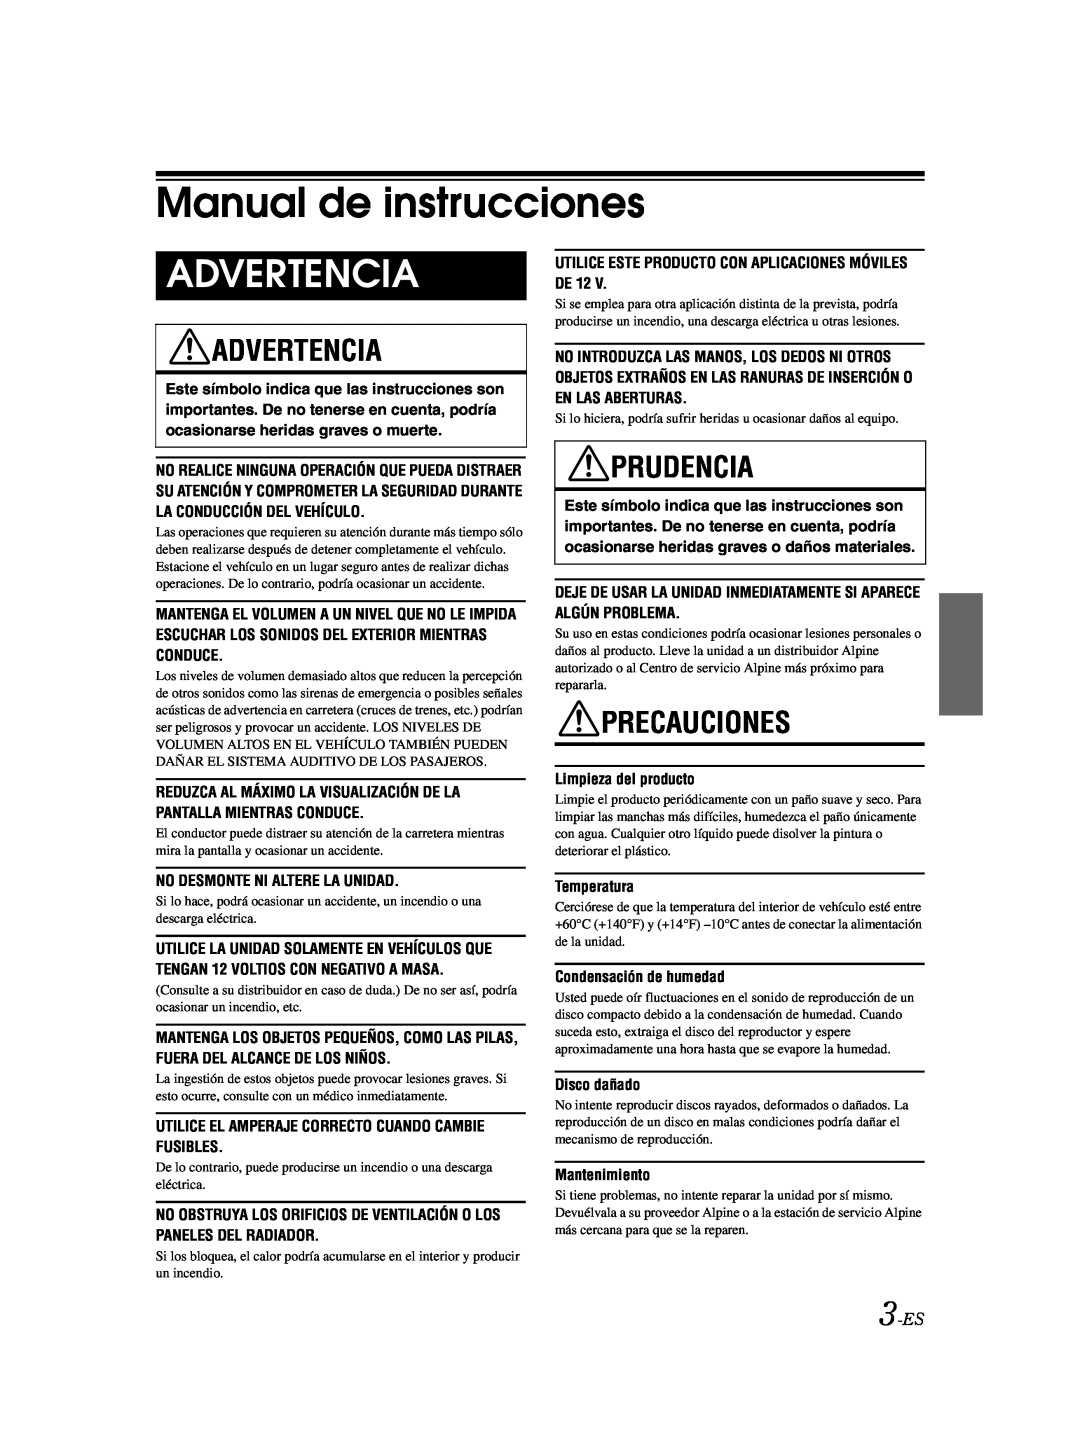 Alpine CDE-9870 owner manual Manual de instrucciones, Advertencia, Prudencia, Precauciones, 3-ES 